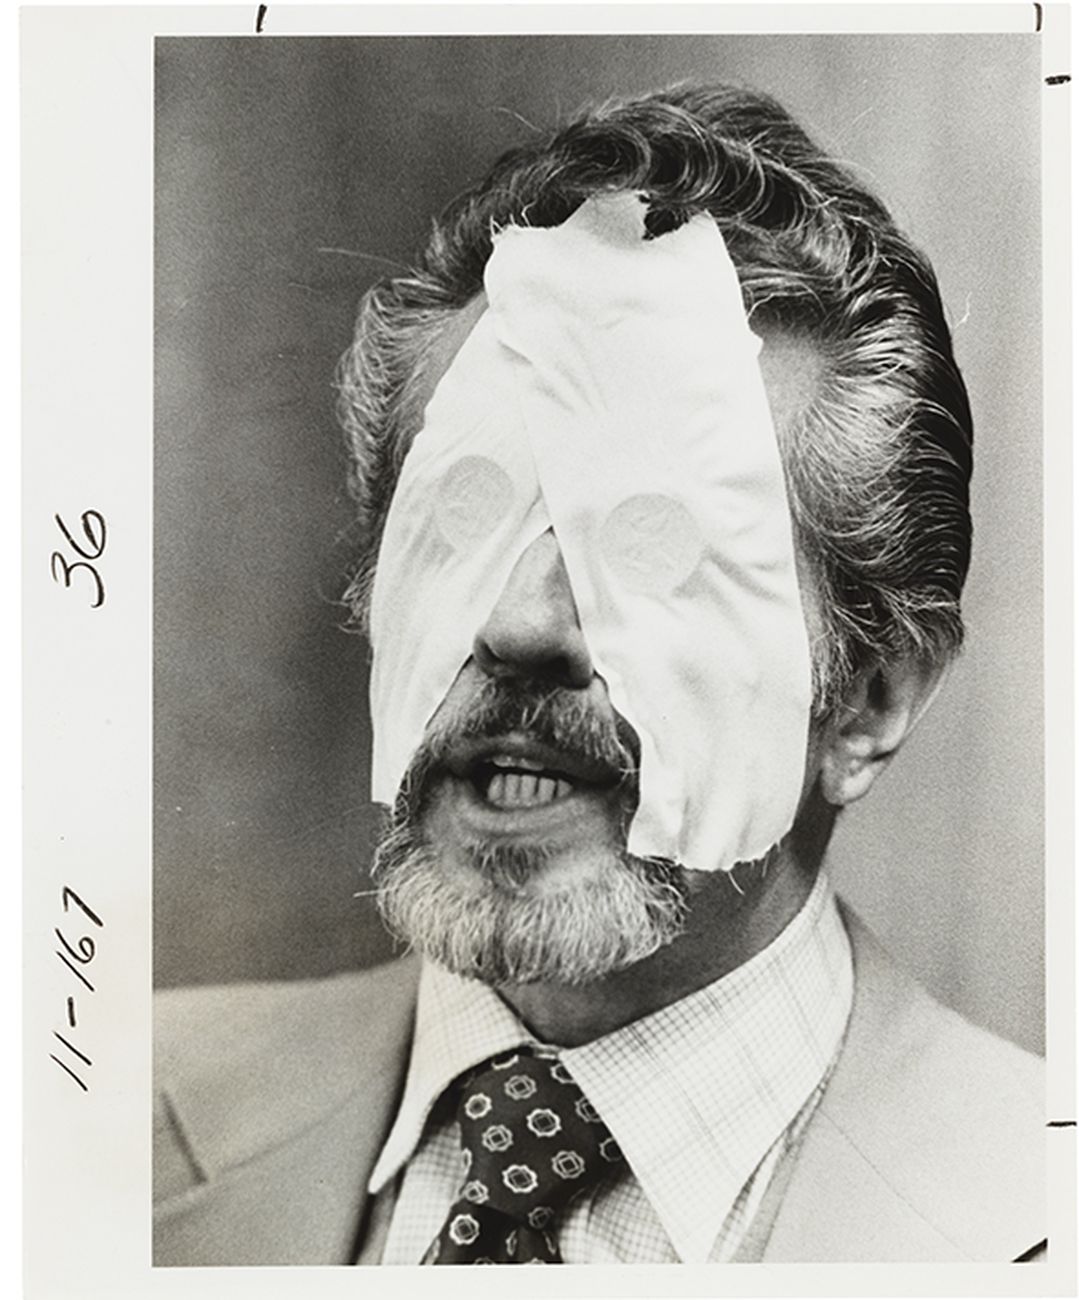 Fotografia del dottor R. L. Noran, professionista di percezioni extrasensoriali, con due monete da mezzo dollaro incollate sugli occhi con il nastro adesivo, 1978 ca. Collezione Tony Oursler